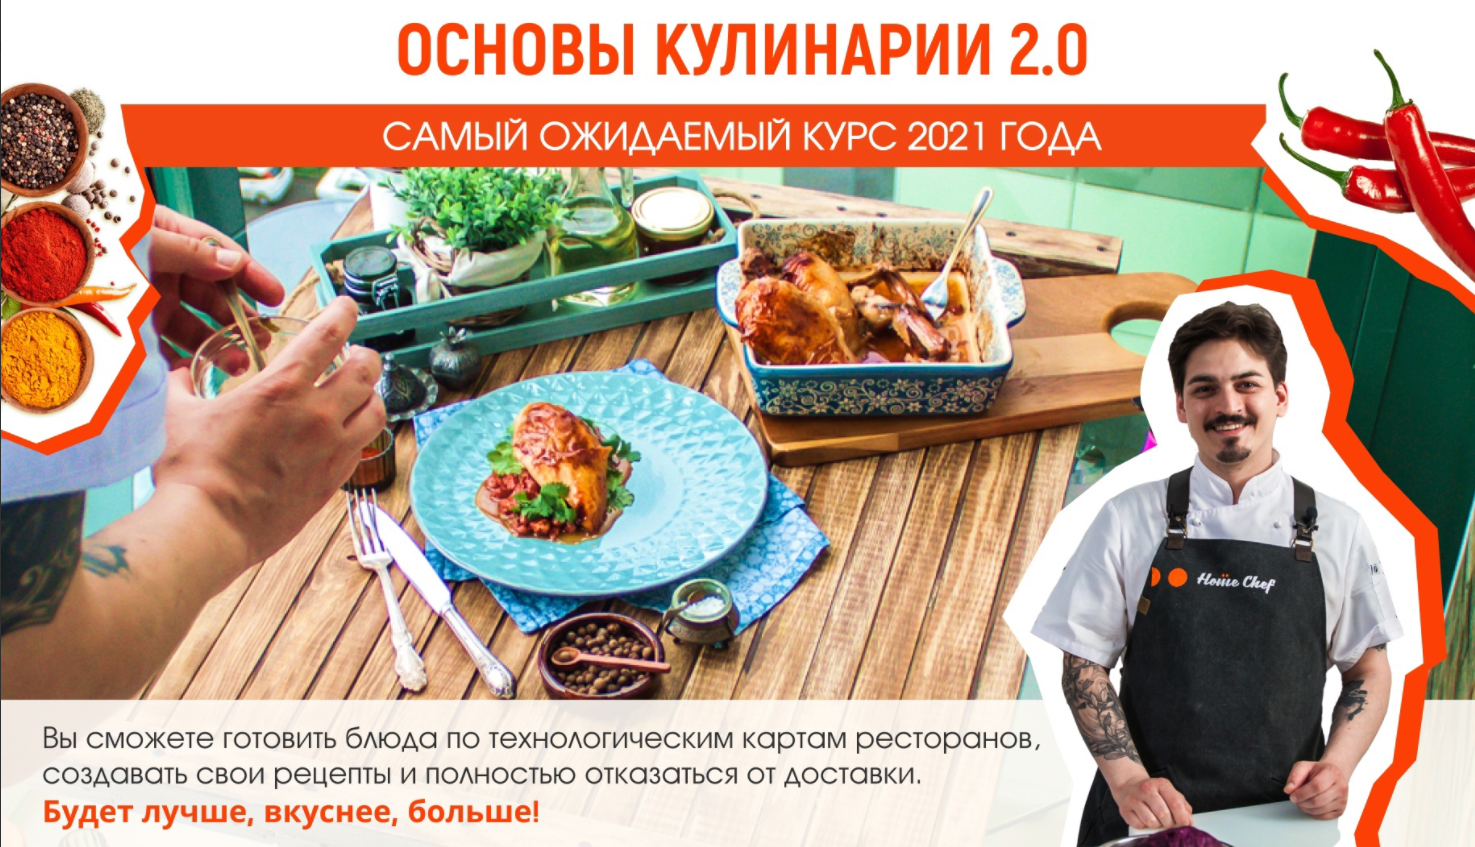 Изображение [Home chef] Основы кулинарии 2.0 (2021) в посте 246184